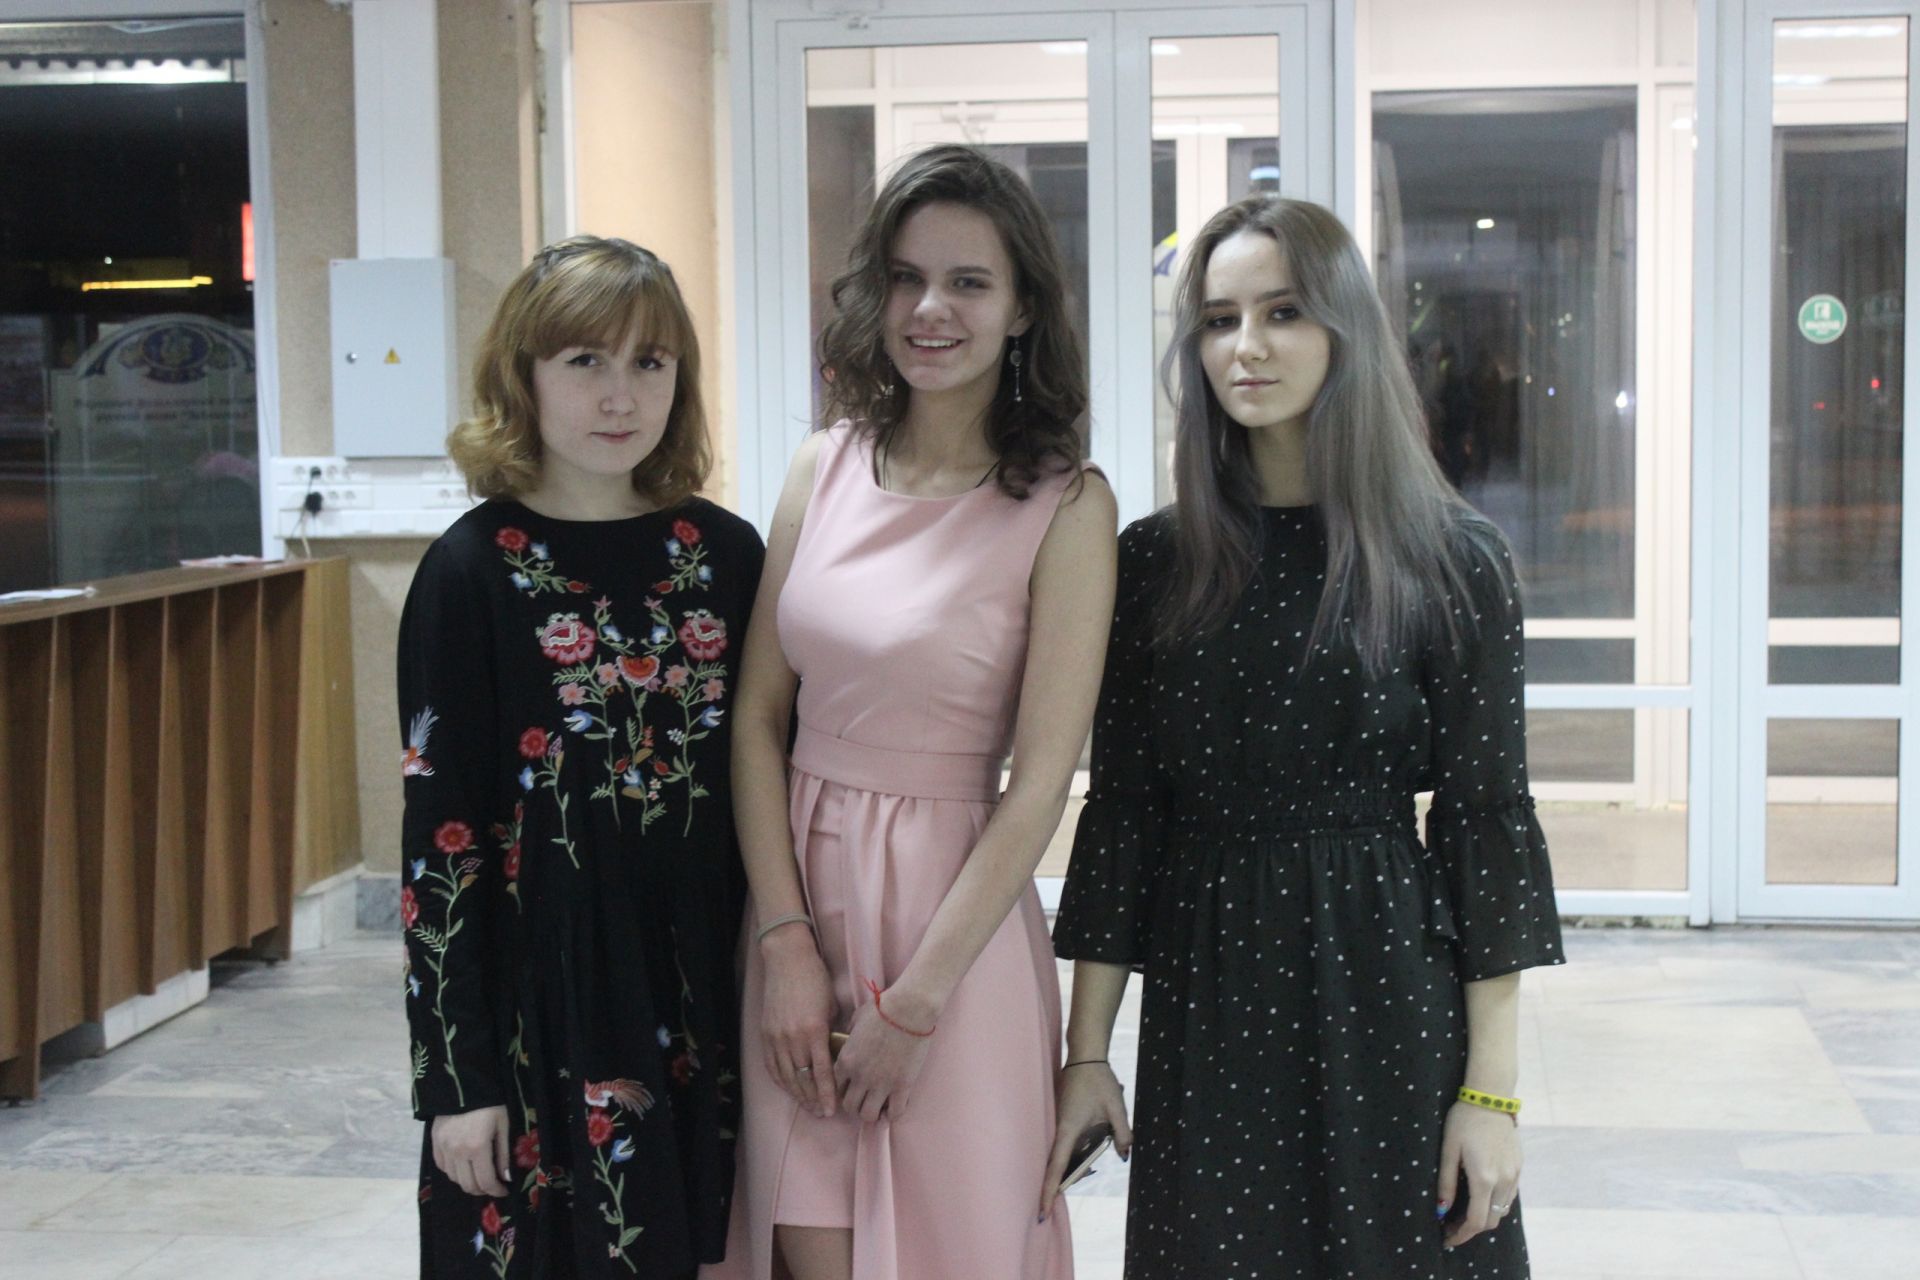 Фоторепортаж: Алексеевская православная молодежь посетила елабужский осенний бал